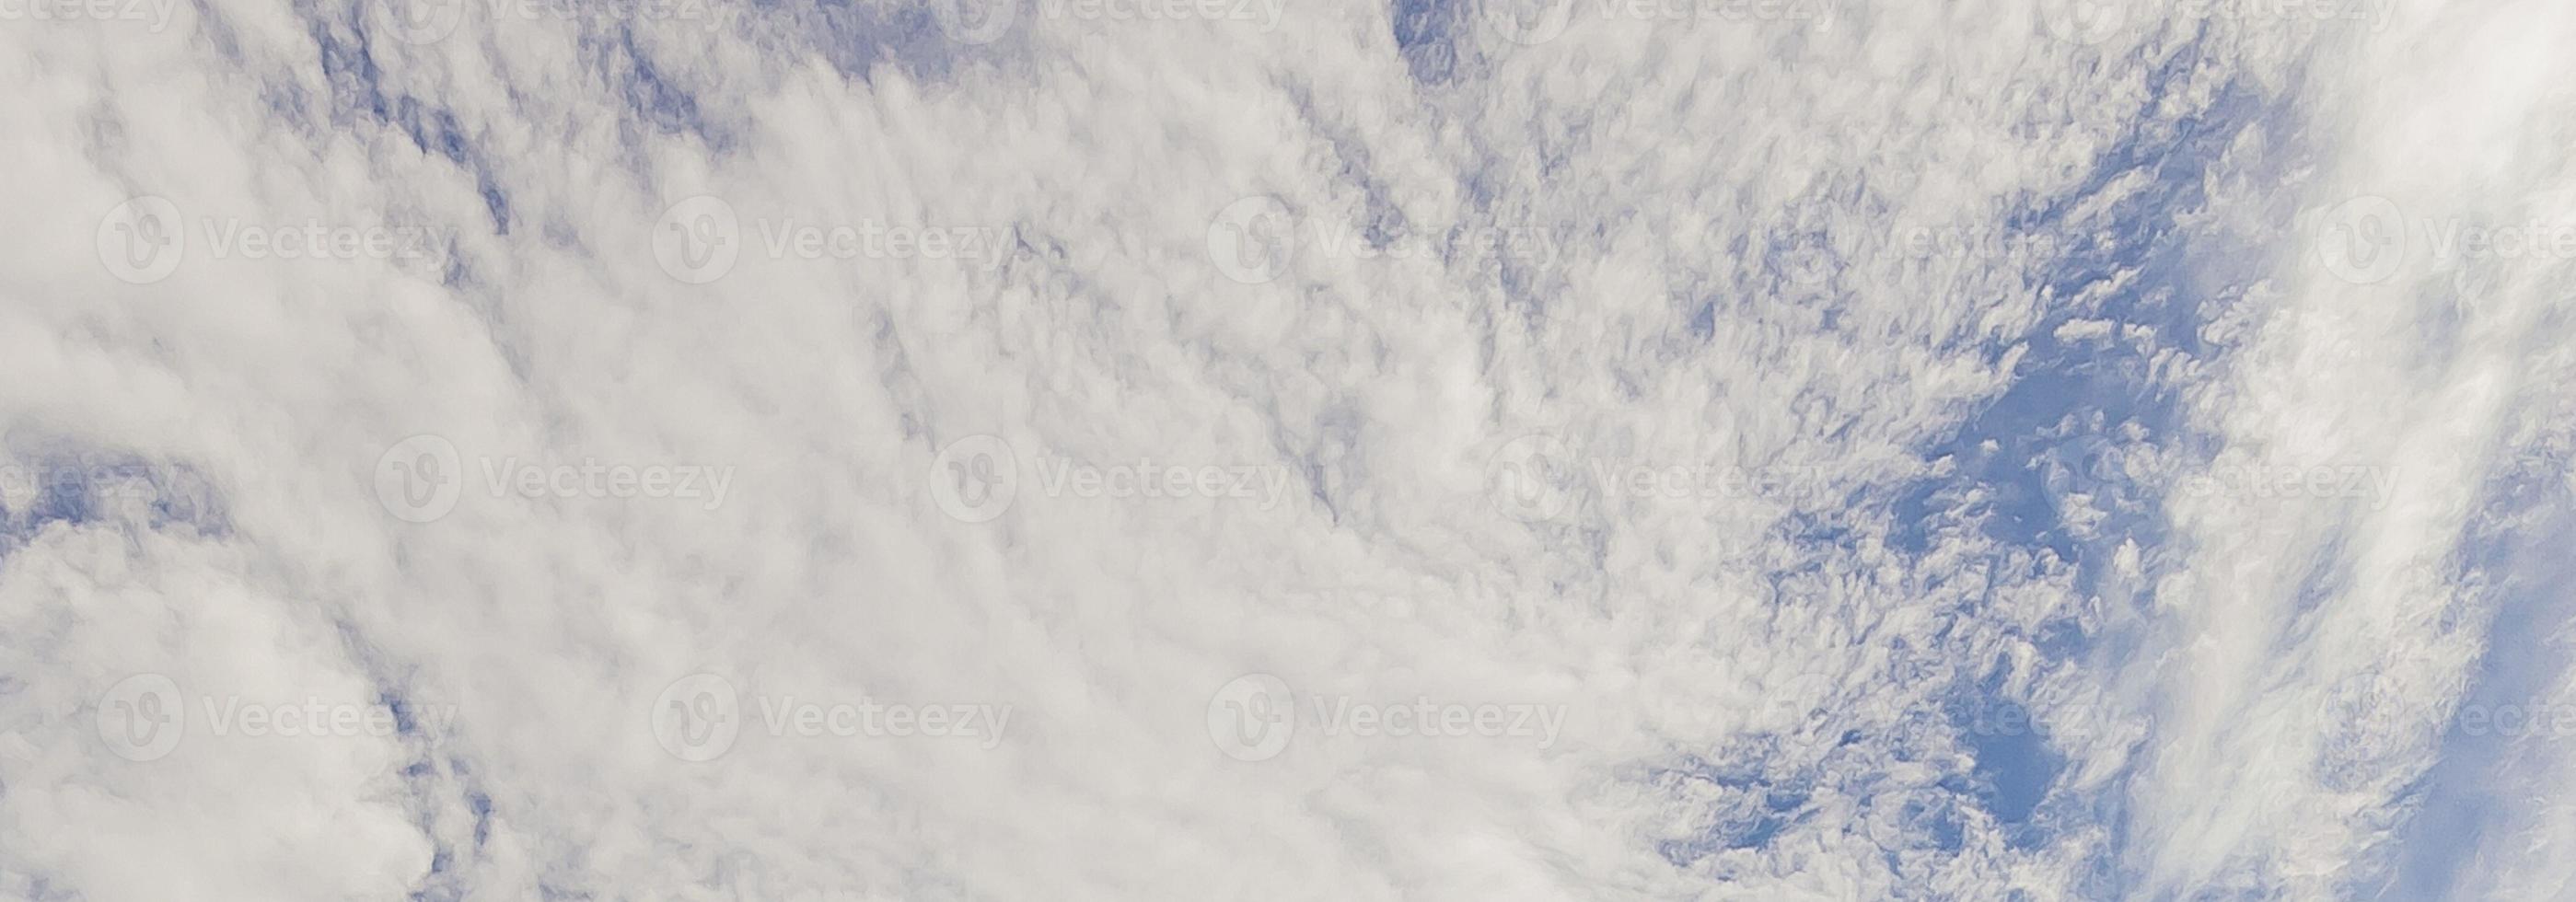 Immagine di un' in parte nuvoloso e in parte chiaro cielo durante il giorno foto